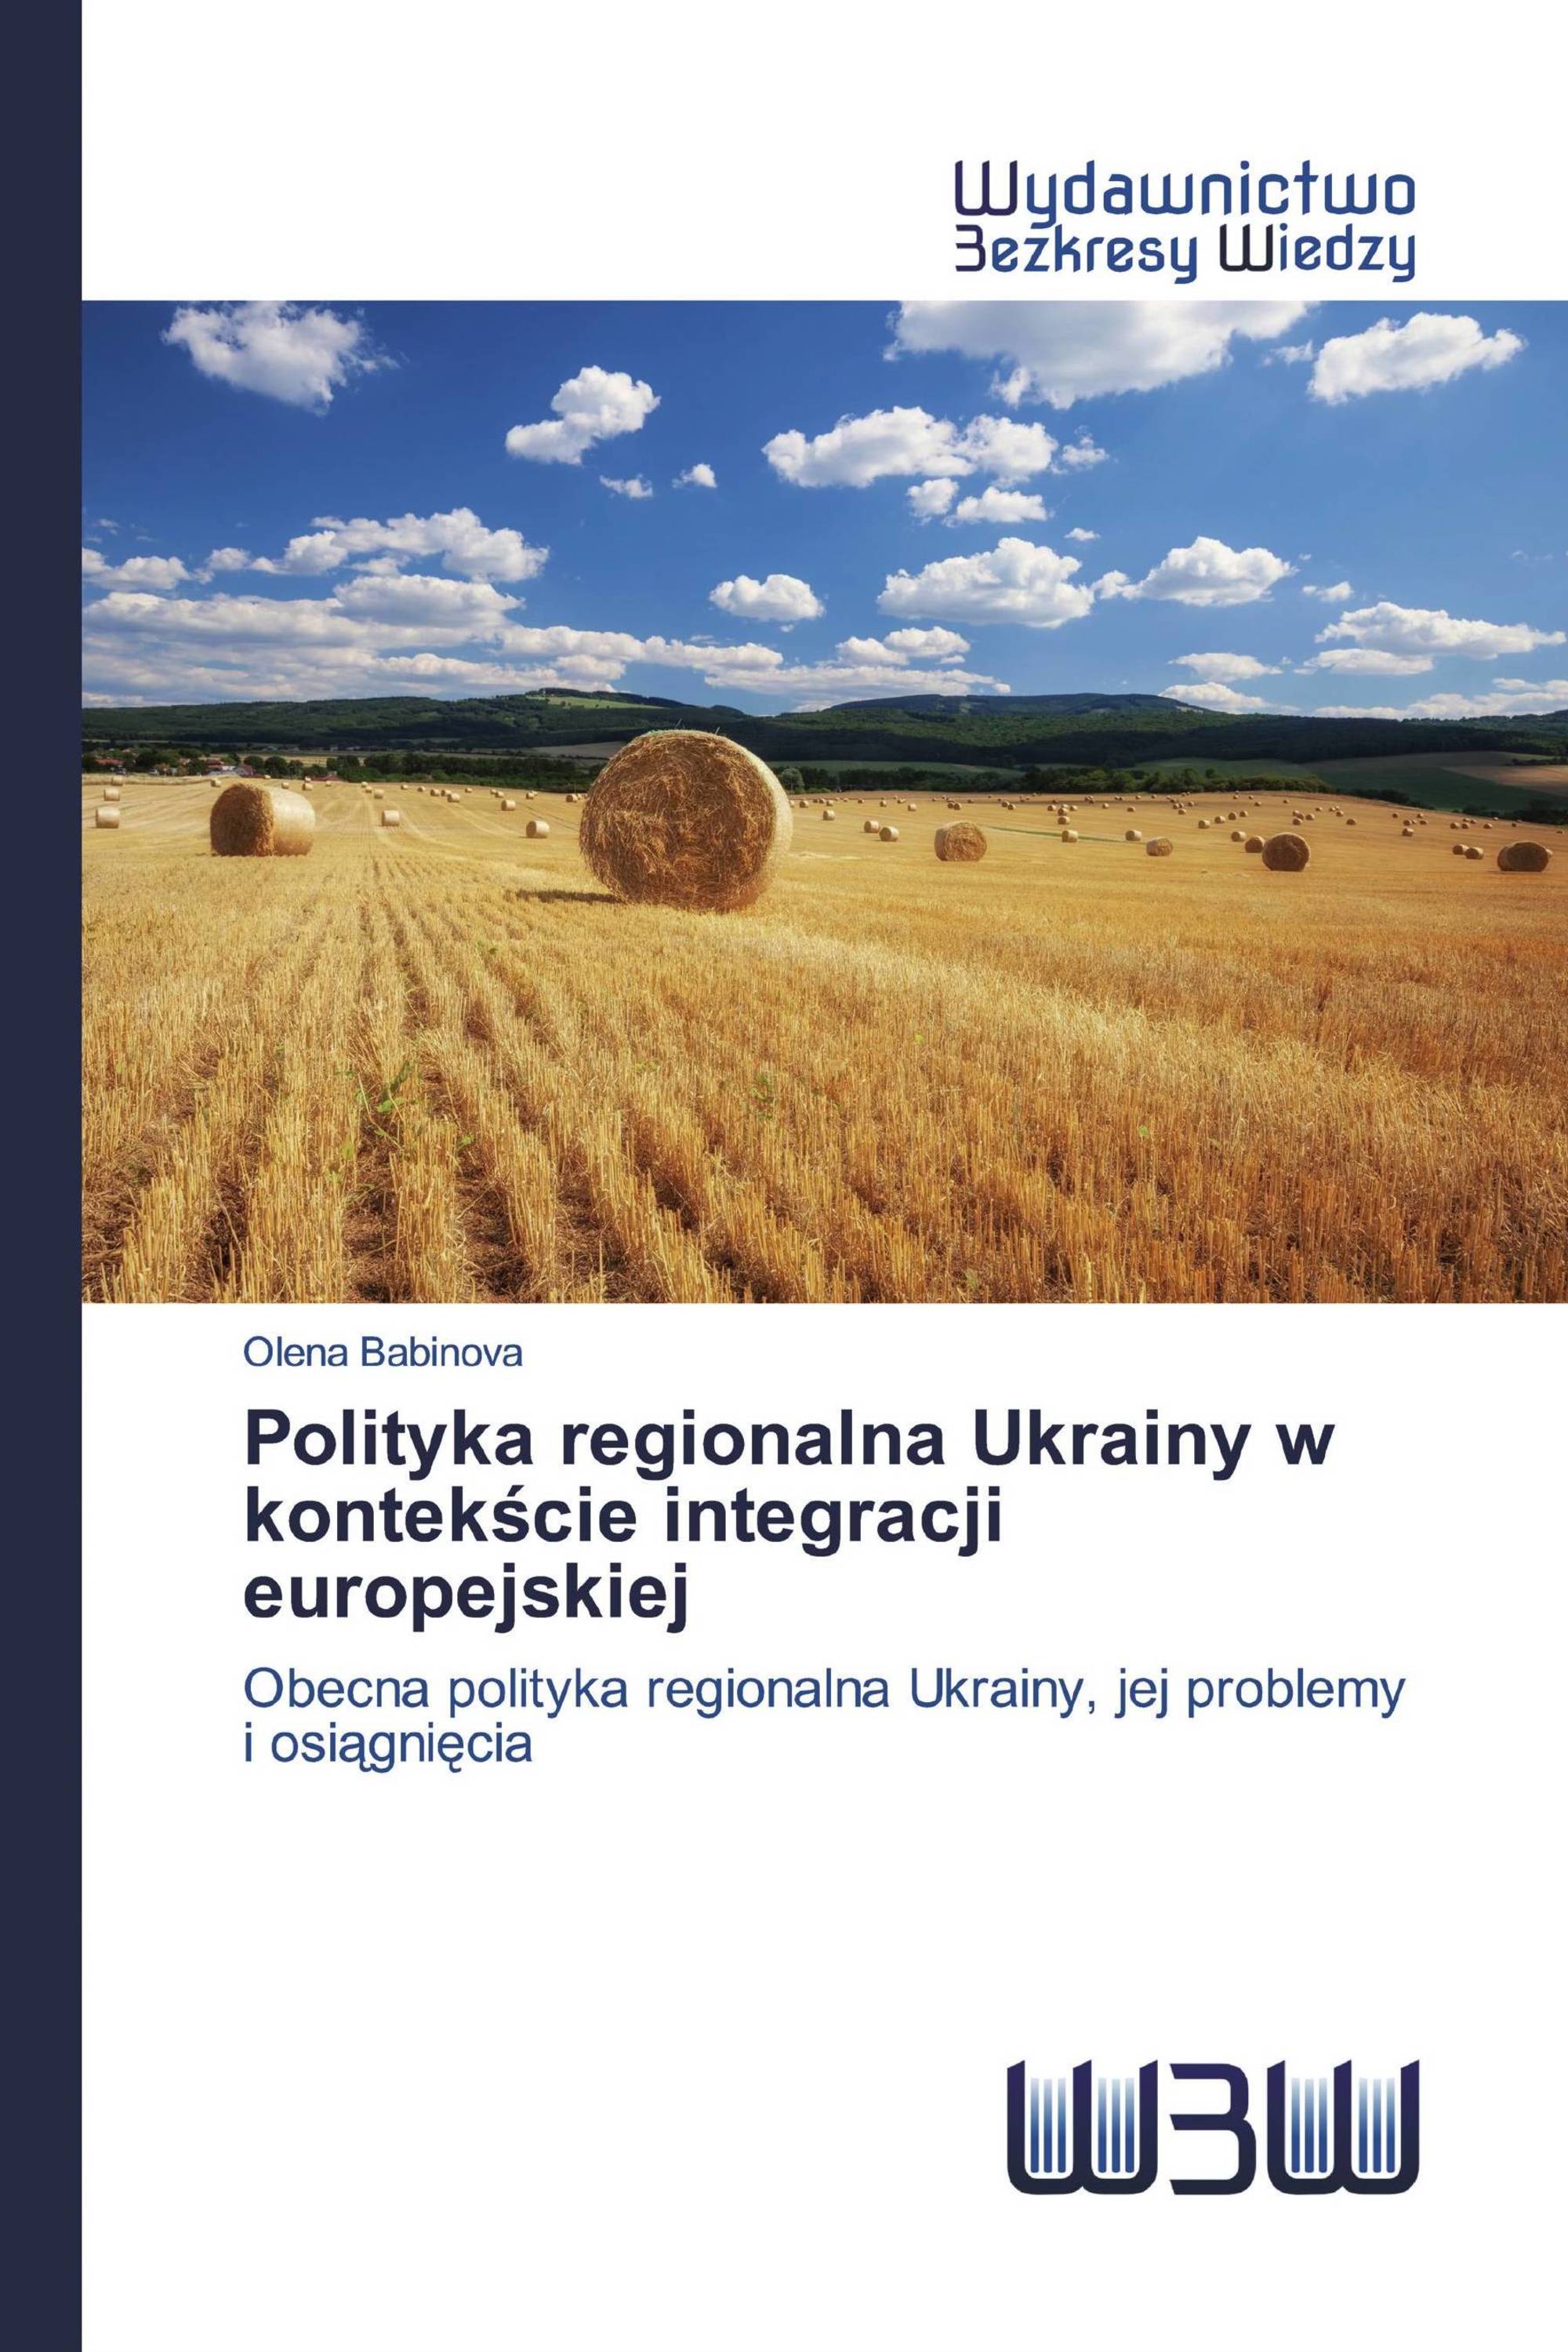 Polityka regionalna Ukrainy w kontekście integracji europejskiej